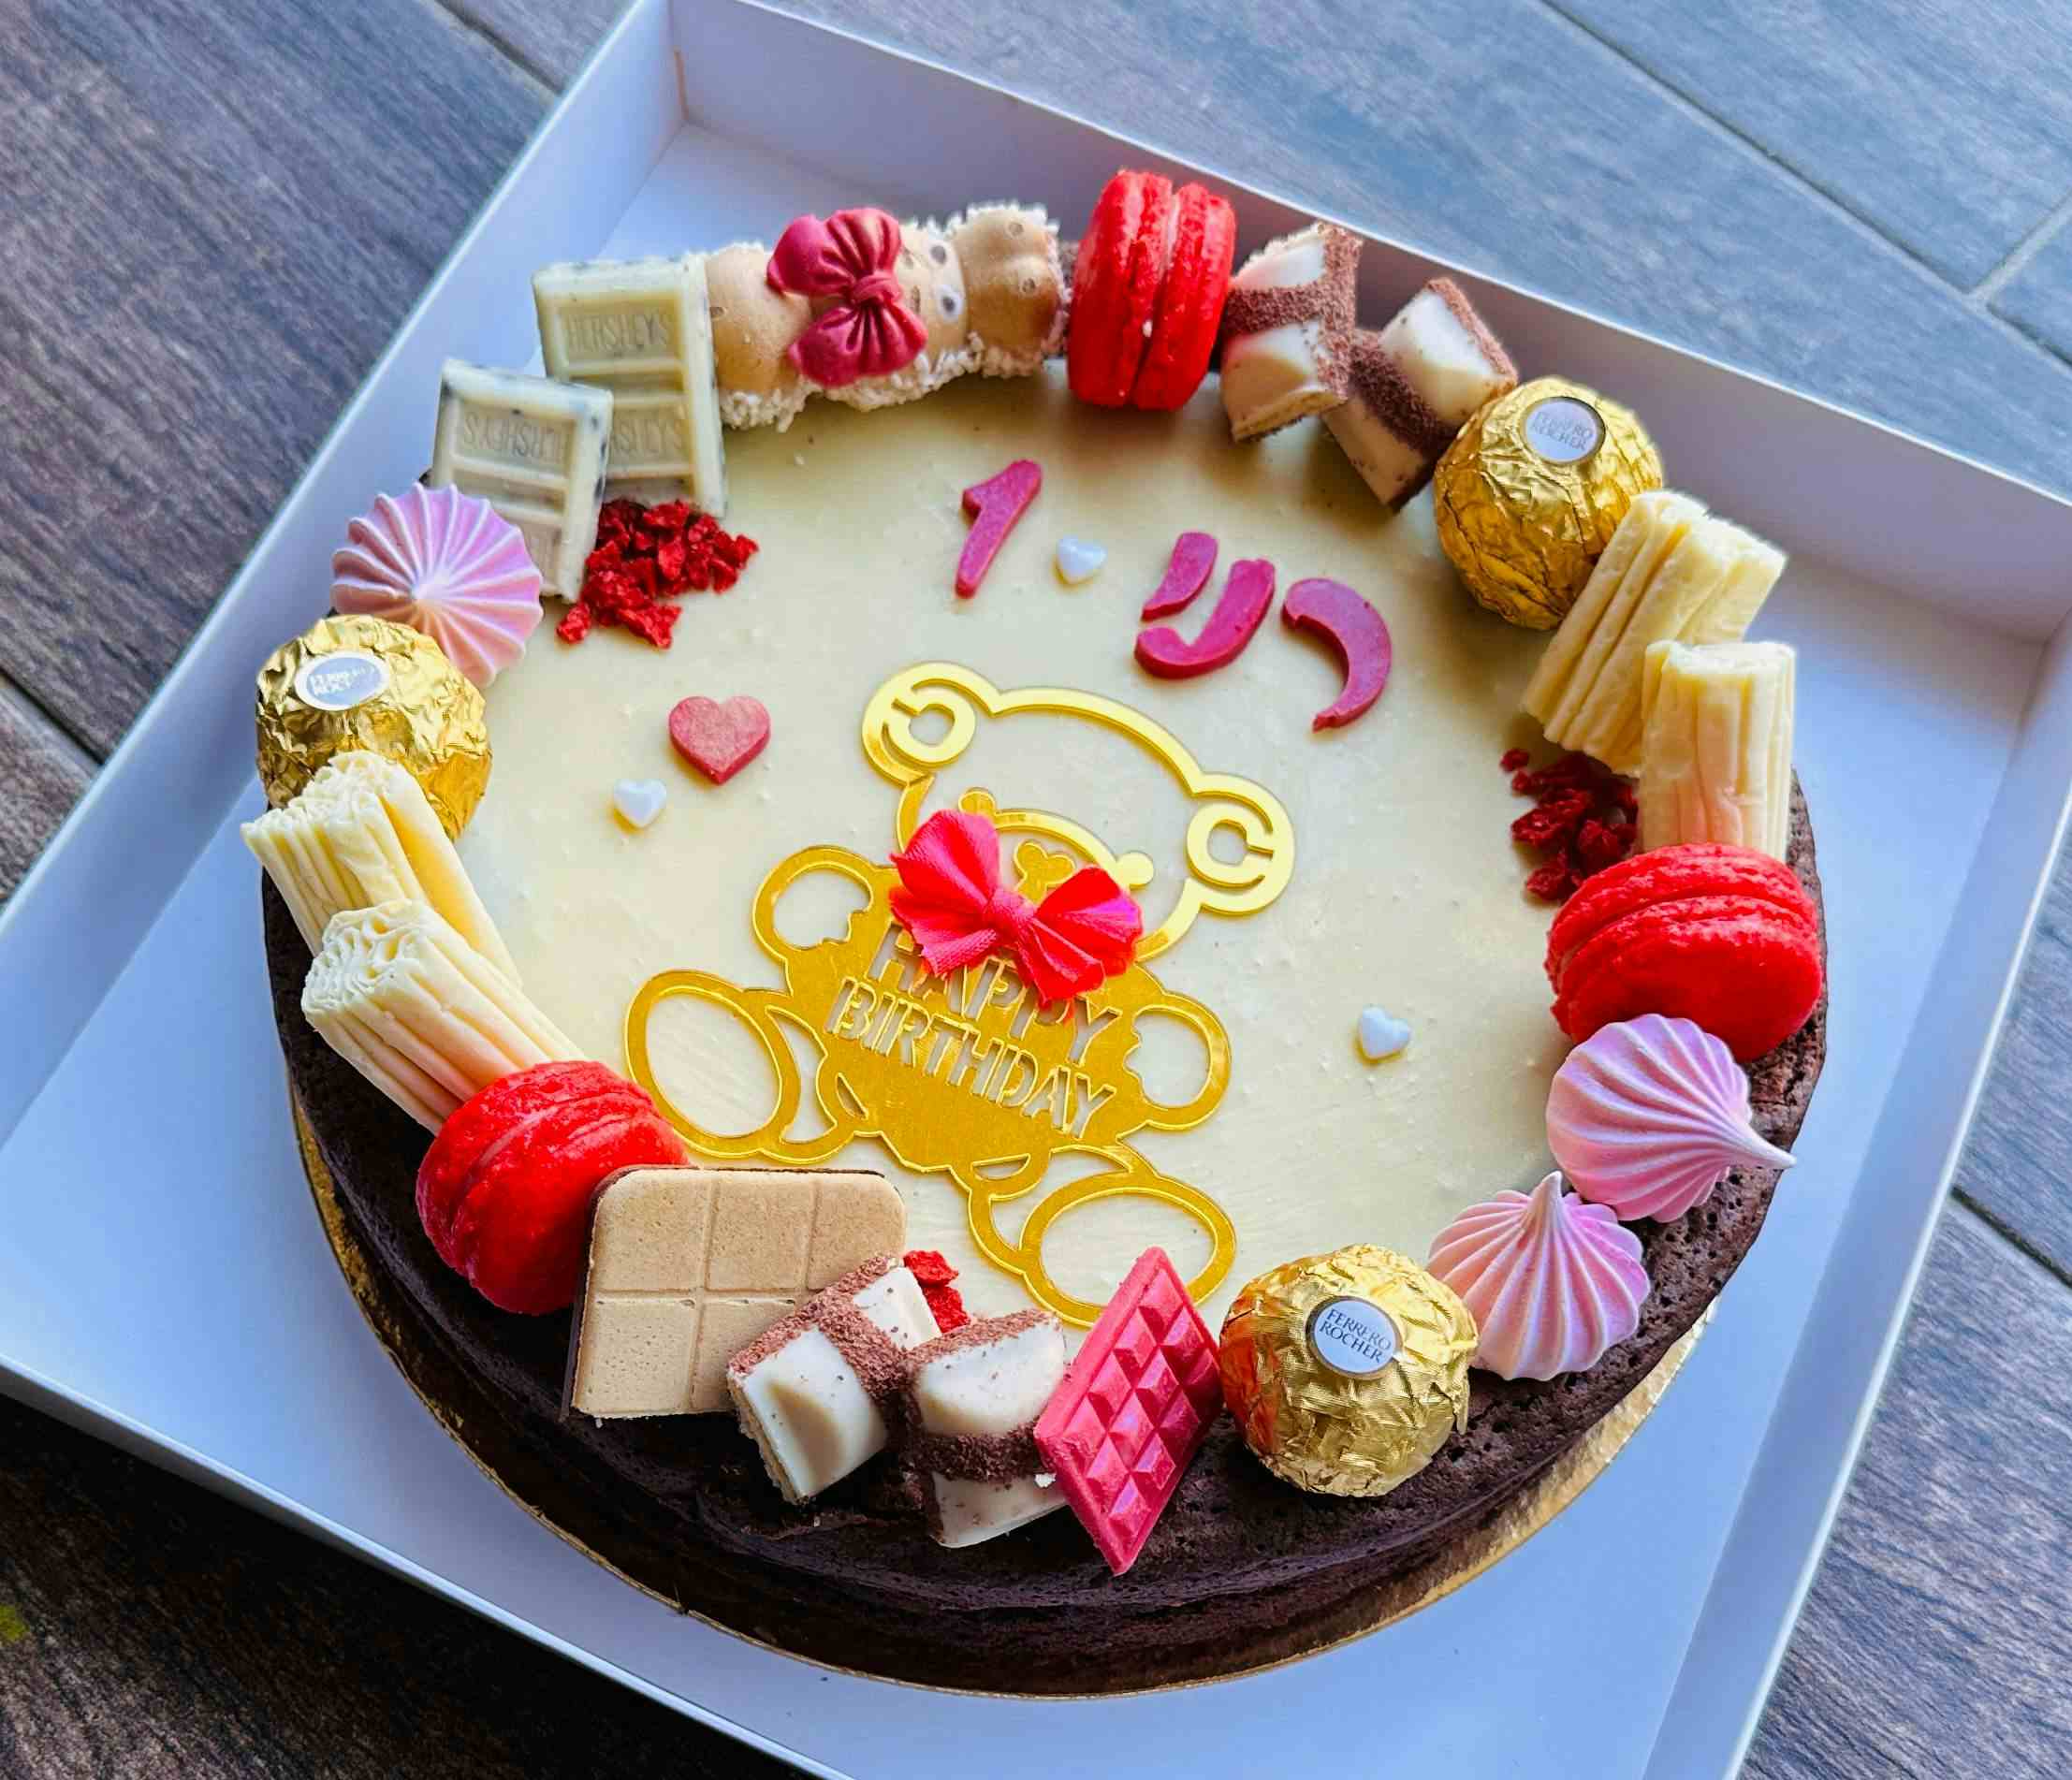   רני חוגגת שנה עם עוגה ורדרדה ושוקולדית  מכוסה בנאש שוקולד לבן ומקרונים אדומים.

